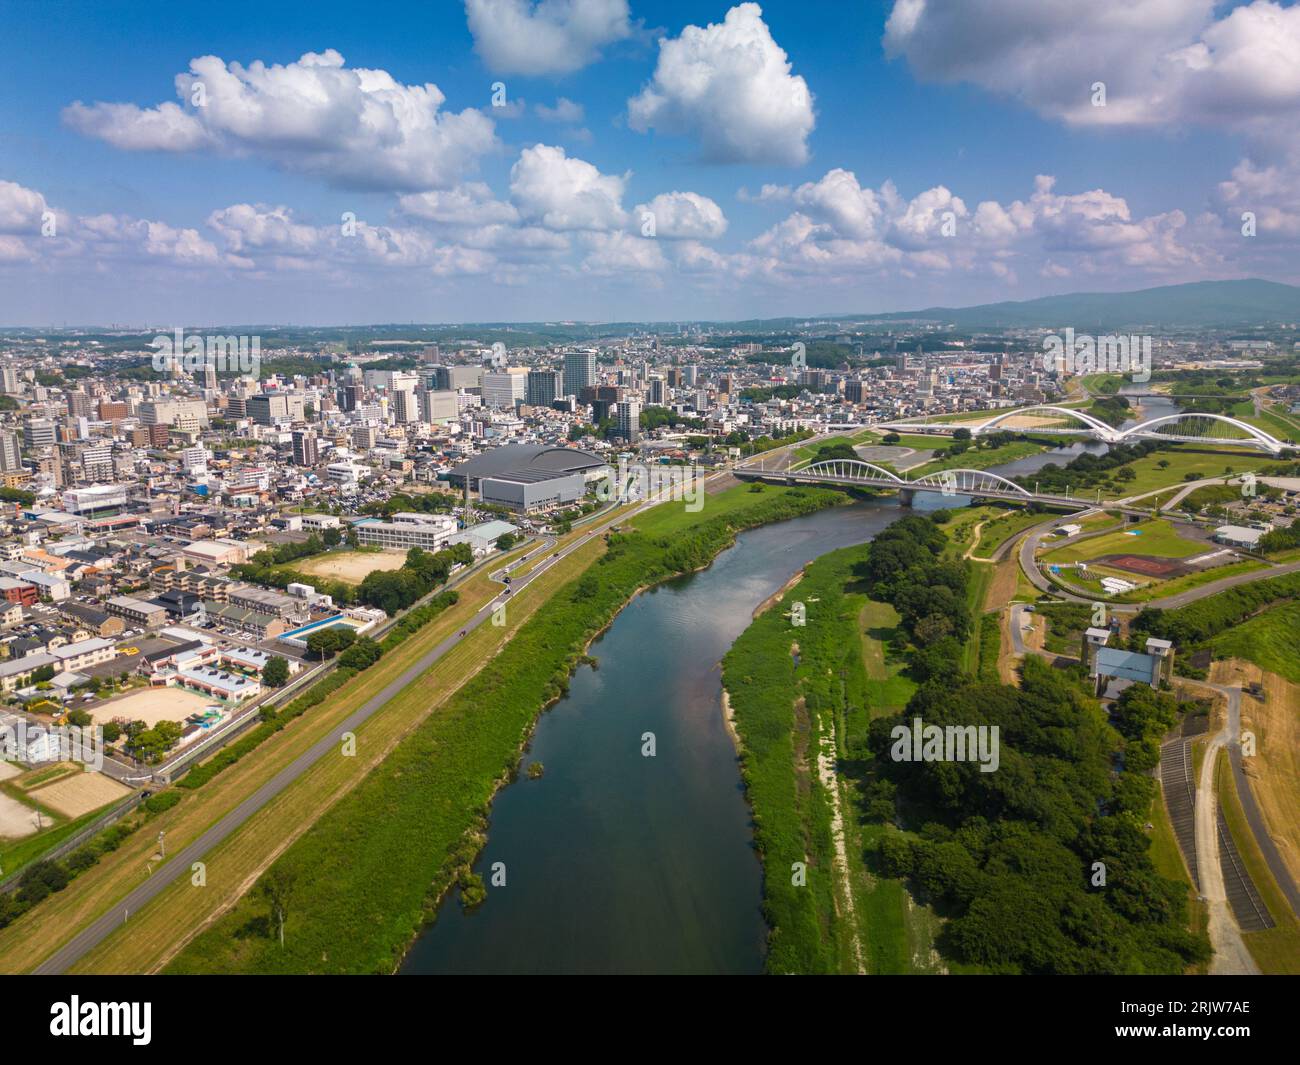 Toyotashi, Aichi, Japan cityscape on the Yahagi River. Stock Photo